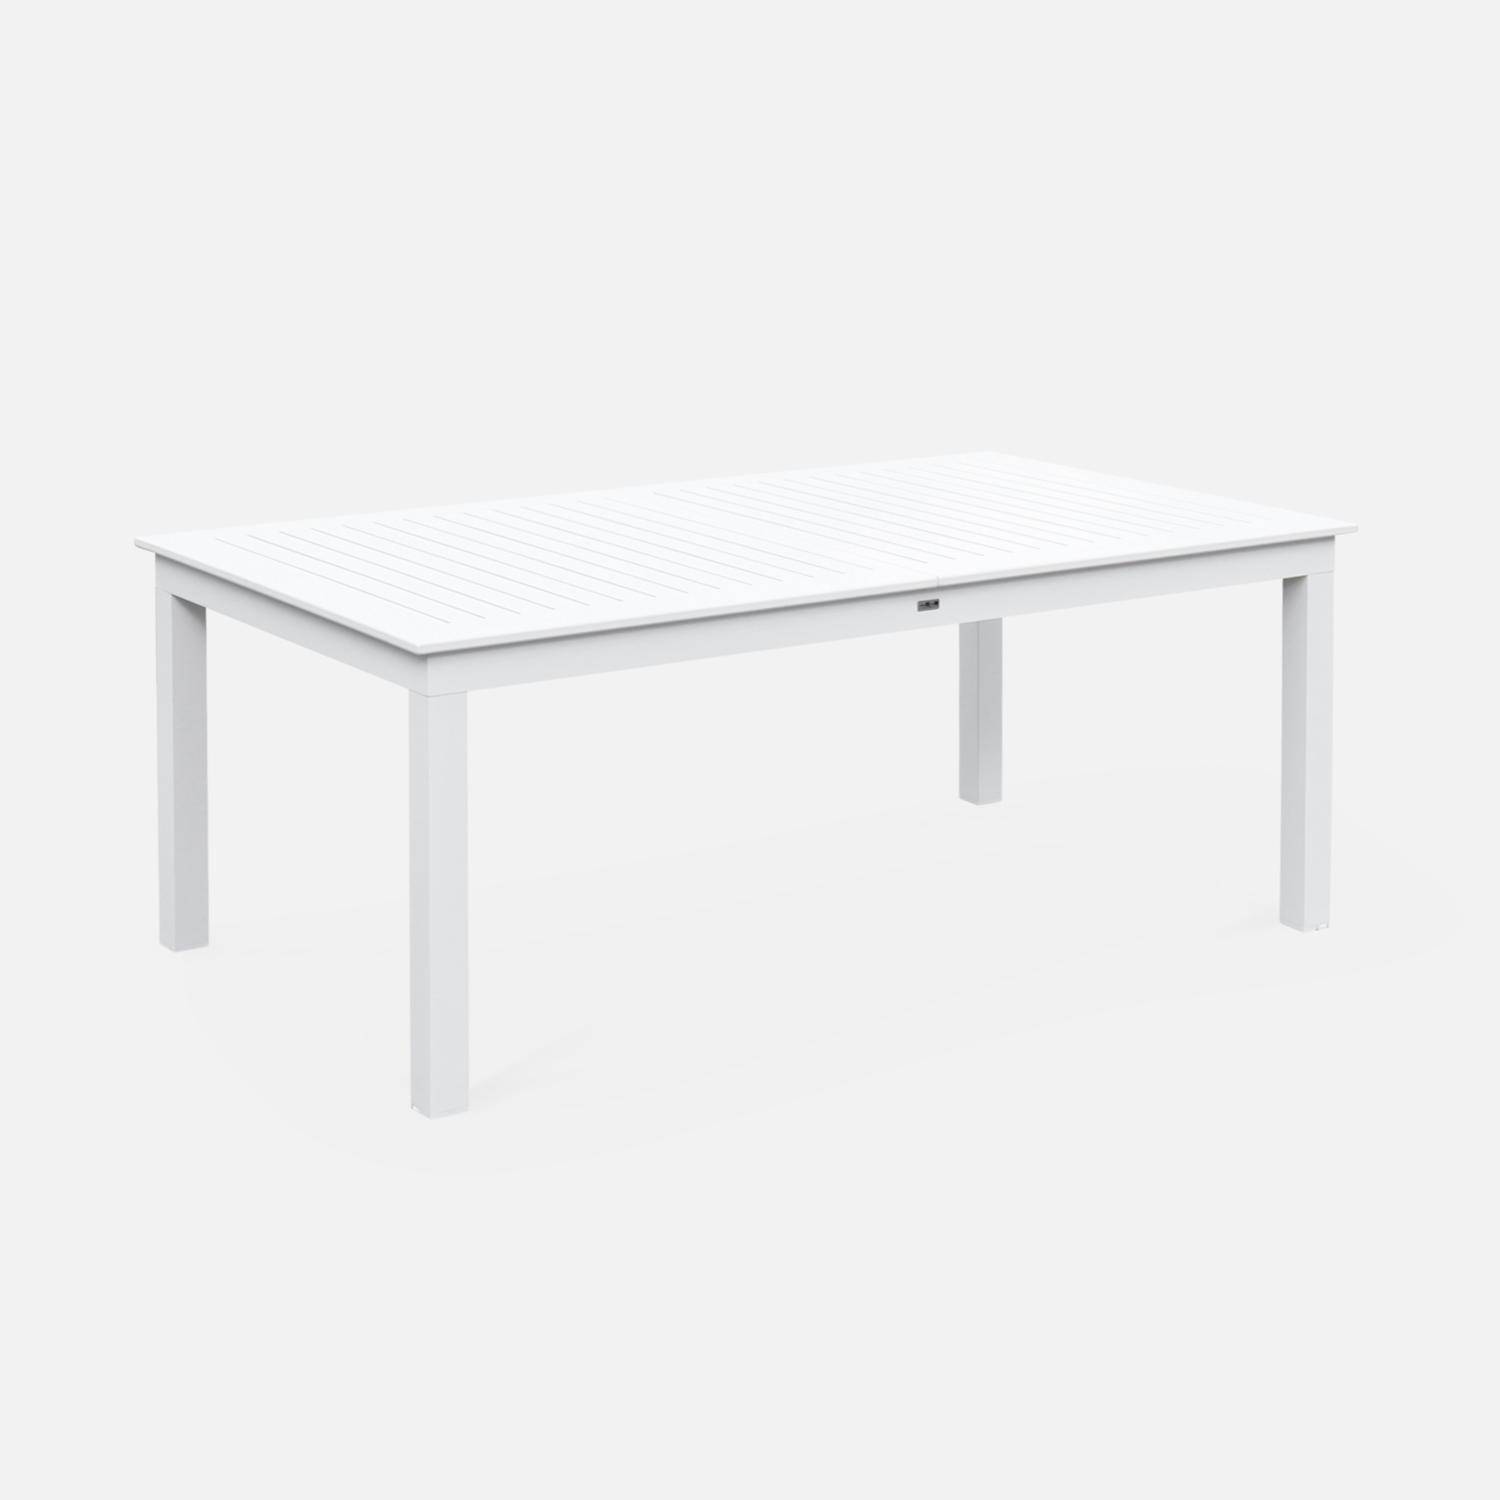 Set da giardino - modello: Chicago, colore: Bianco - Tavolo allungabile in alluminio, dimensioni: 175/245cm con prolunga e 8 sedute in textilene Photo9